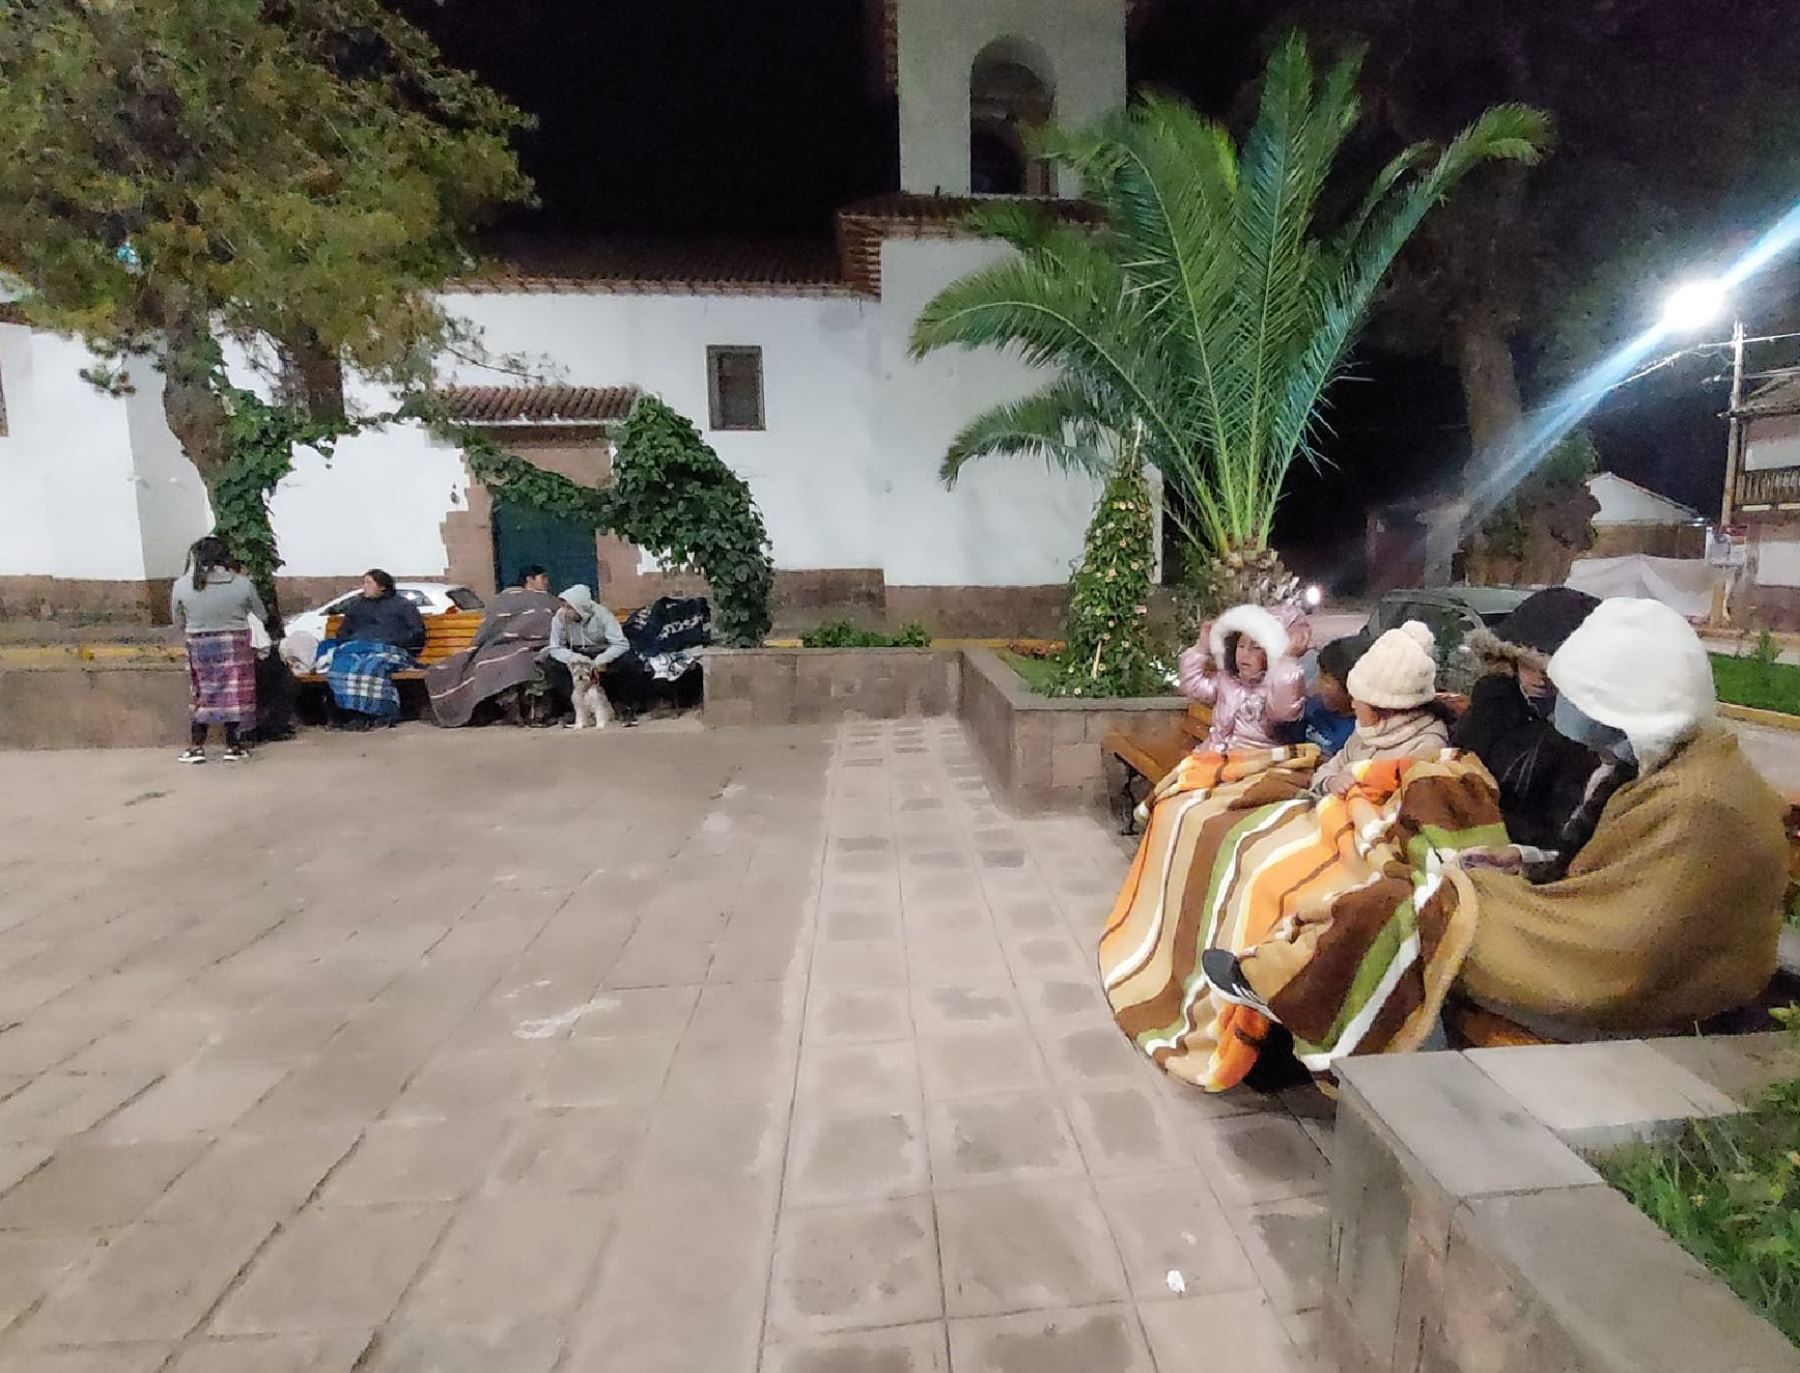 El fuerte sismo de magnitud 4.0, registrado anoche en Cusco, provocó la alarma en la población que tuvo que salir a las calles por el fuerte remezón. Foto: ANDINA/difusión.